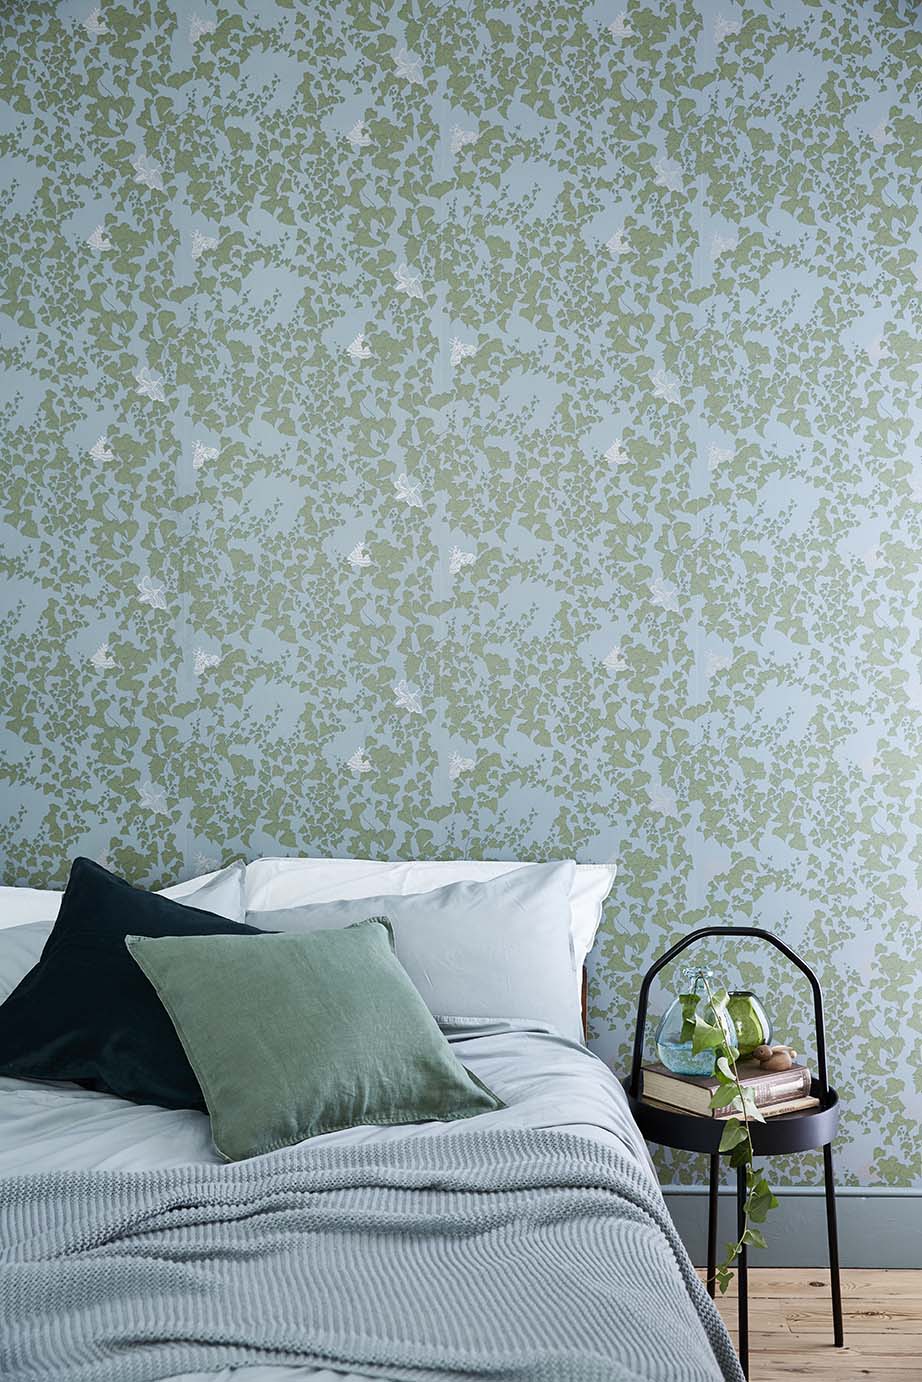 Secret garden ivy wallpaper green abigail edwards â abigail edwards hand drawn wallpapers fabrics and accessories